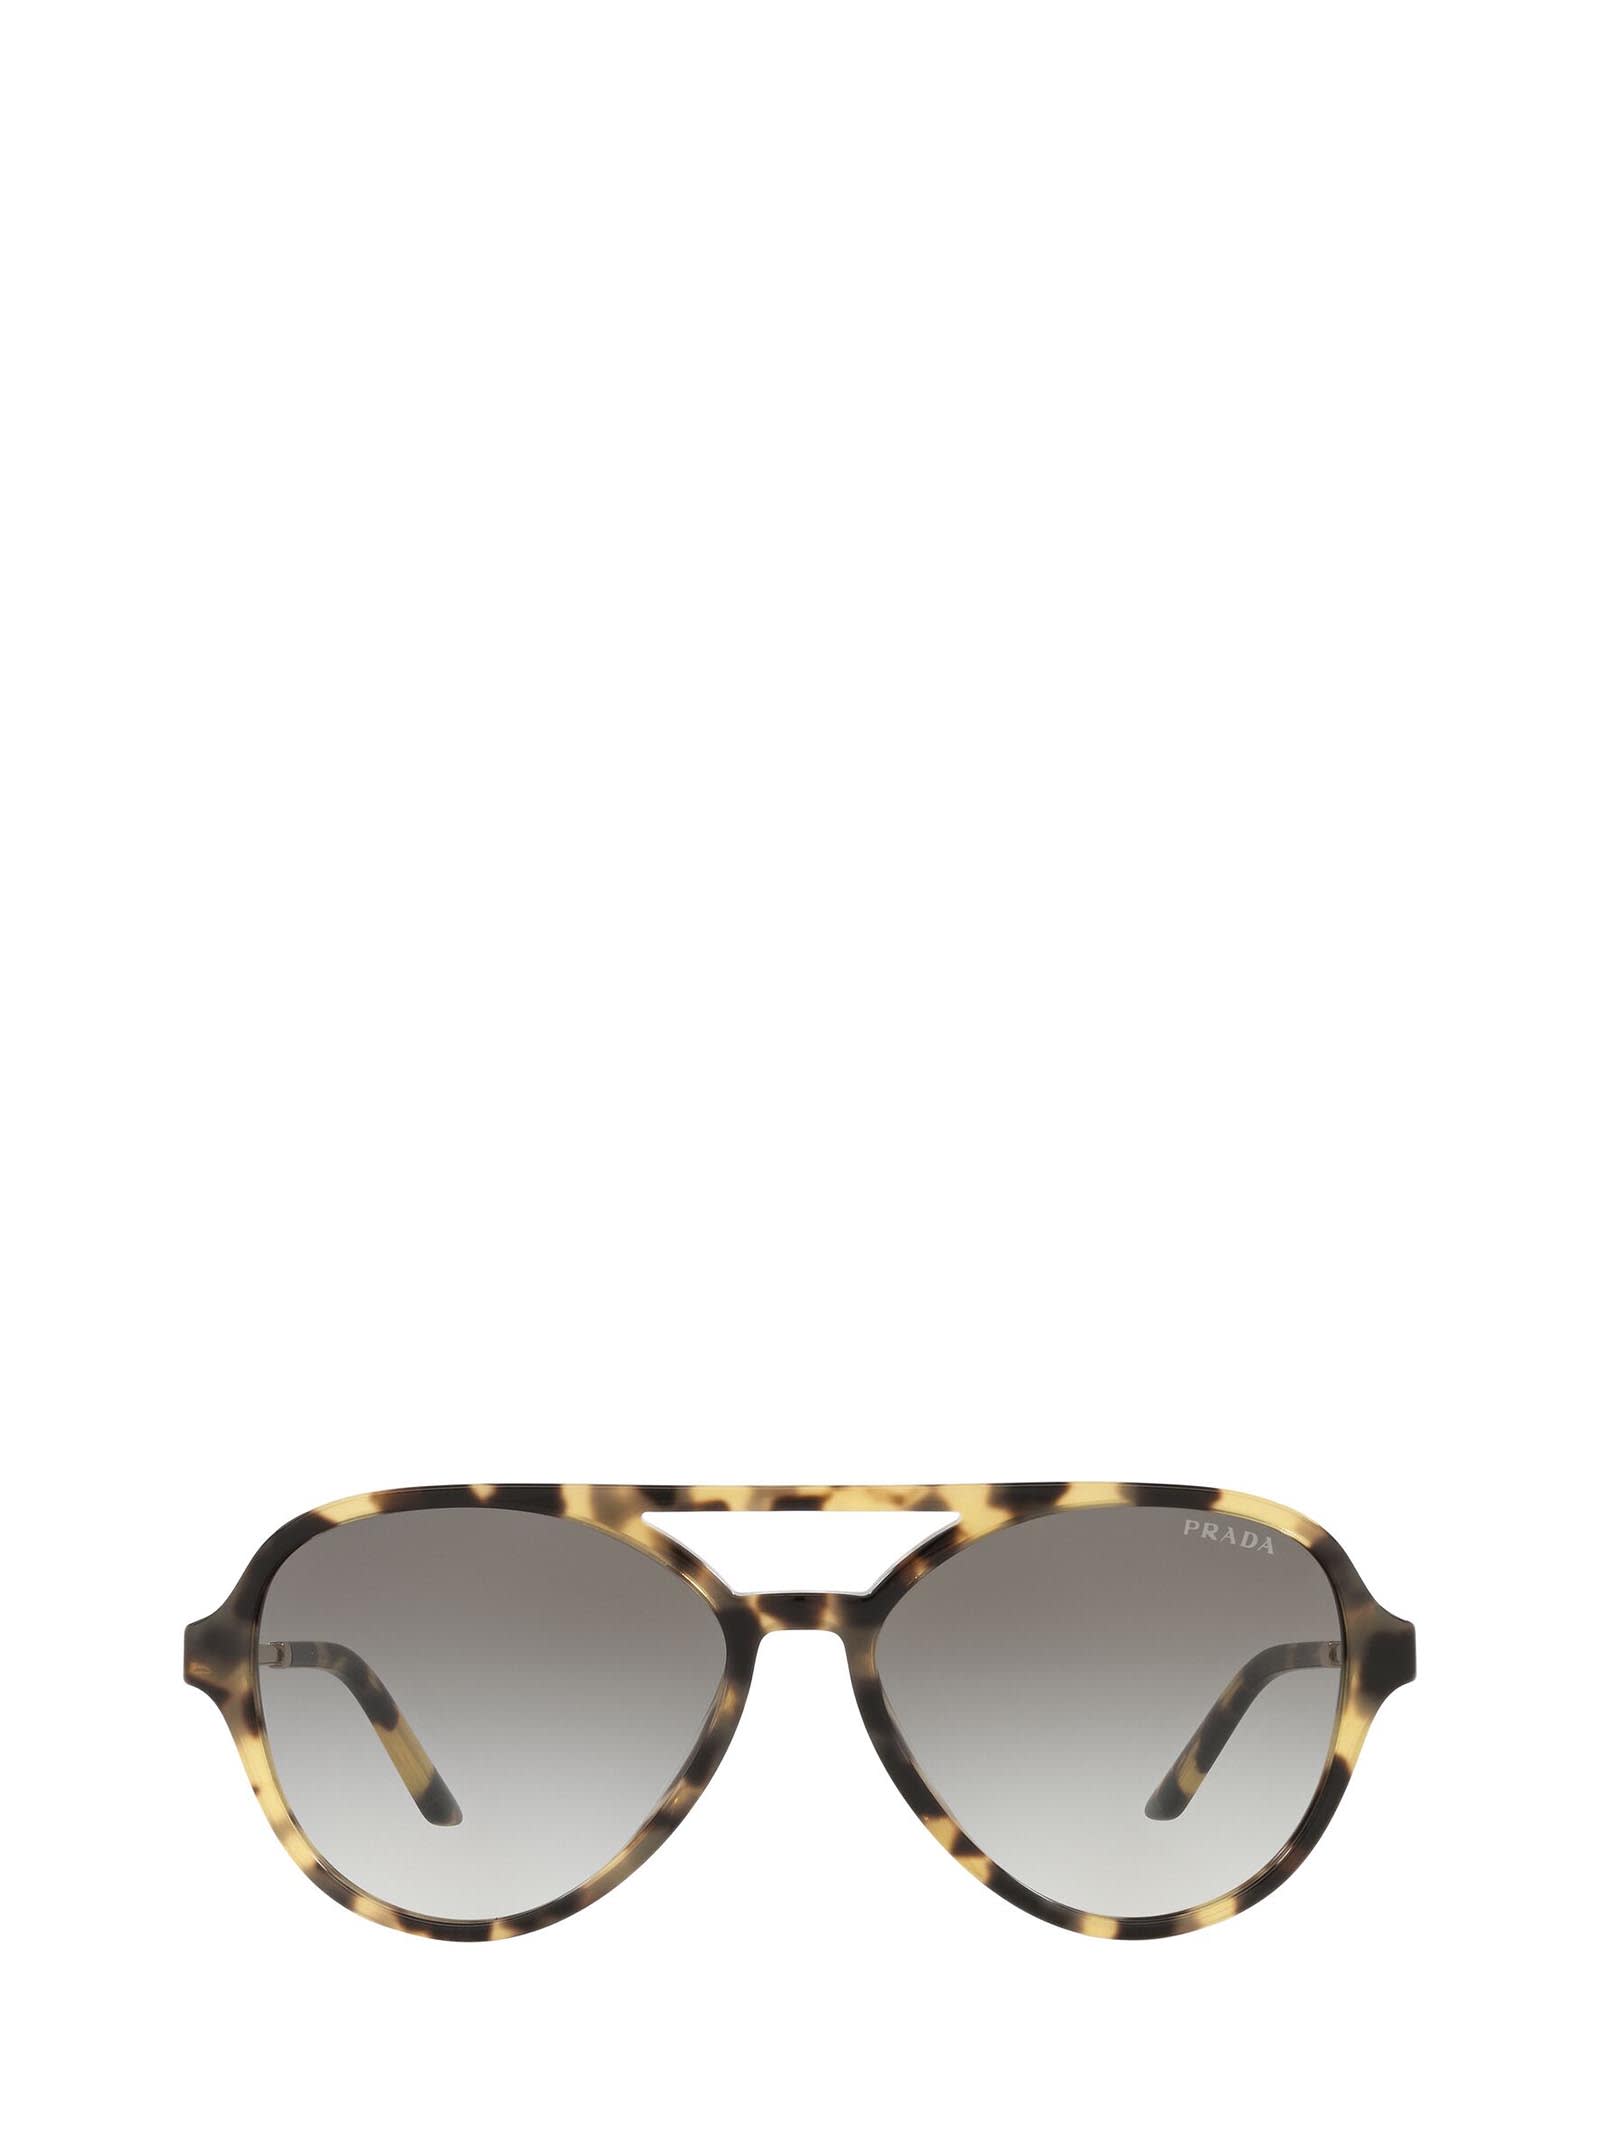 Prada Prada Pr 13ws Medium Tortoise Sunglasses